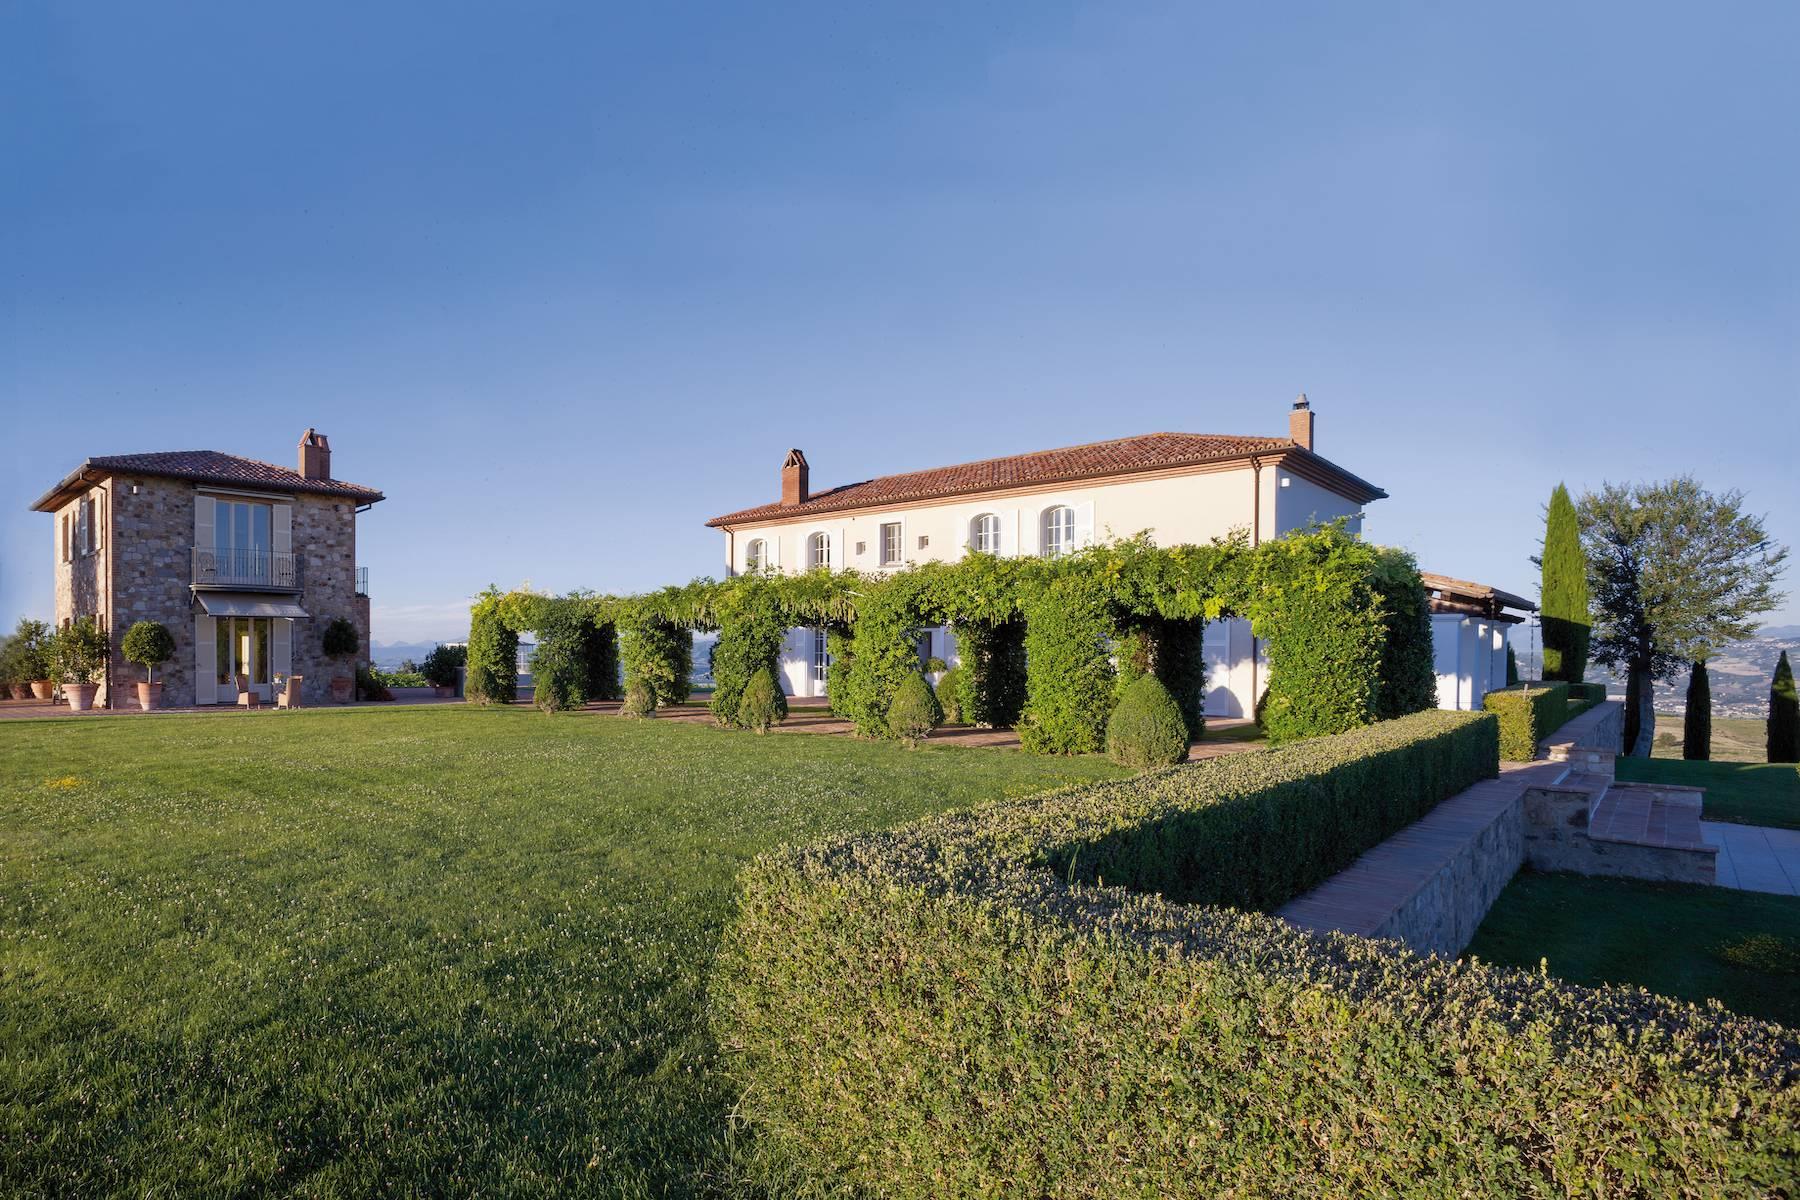 Dreamy villa hidden among the Umbrian hills - 3